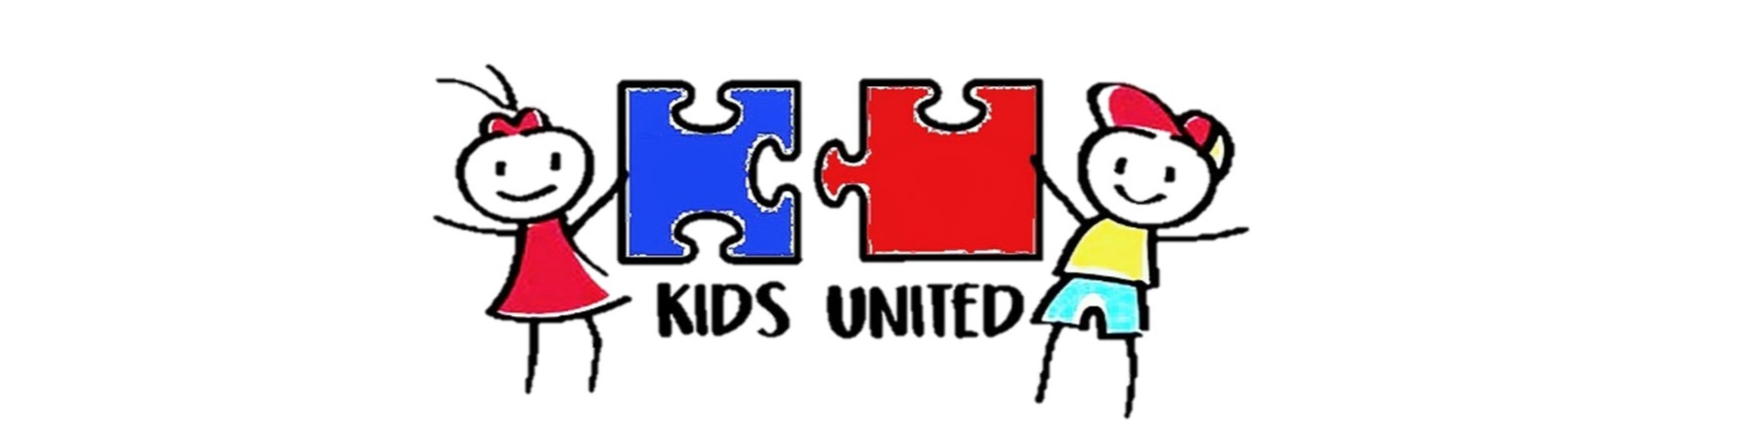 Kids United OSHC - Camden South